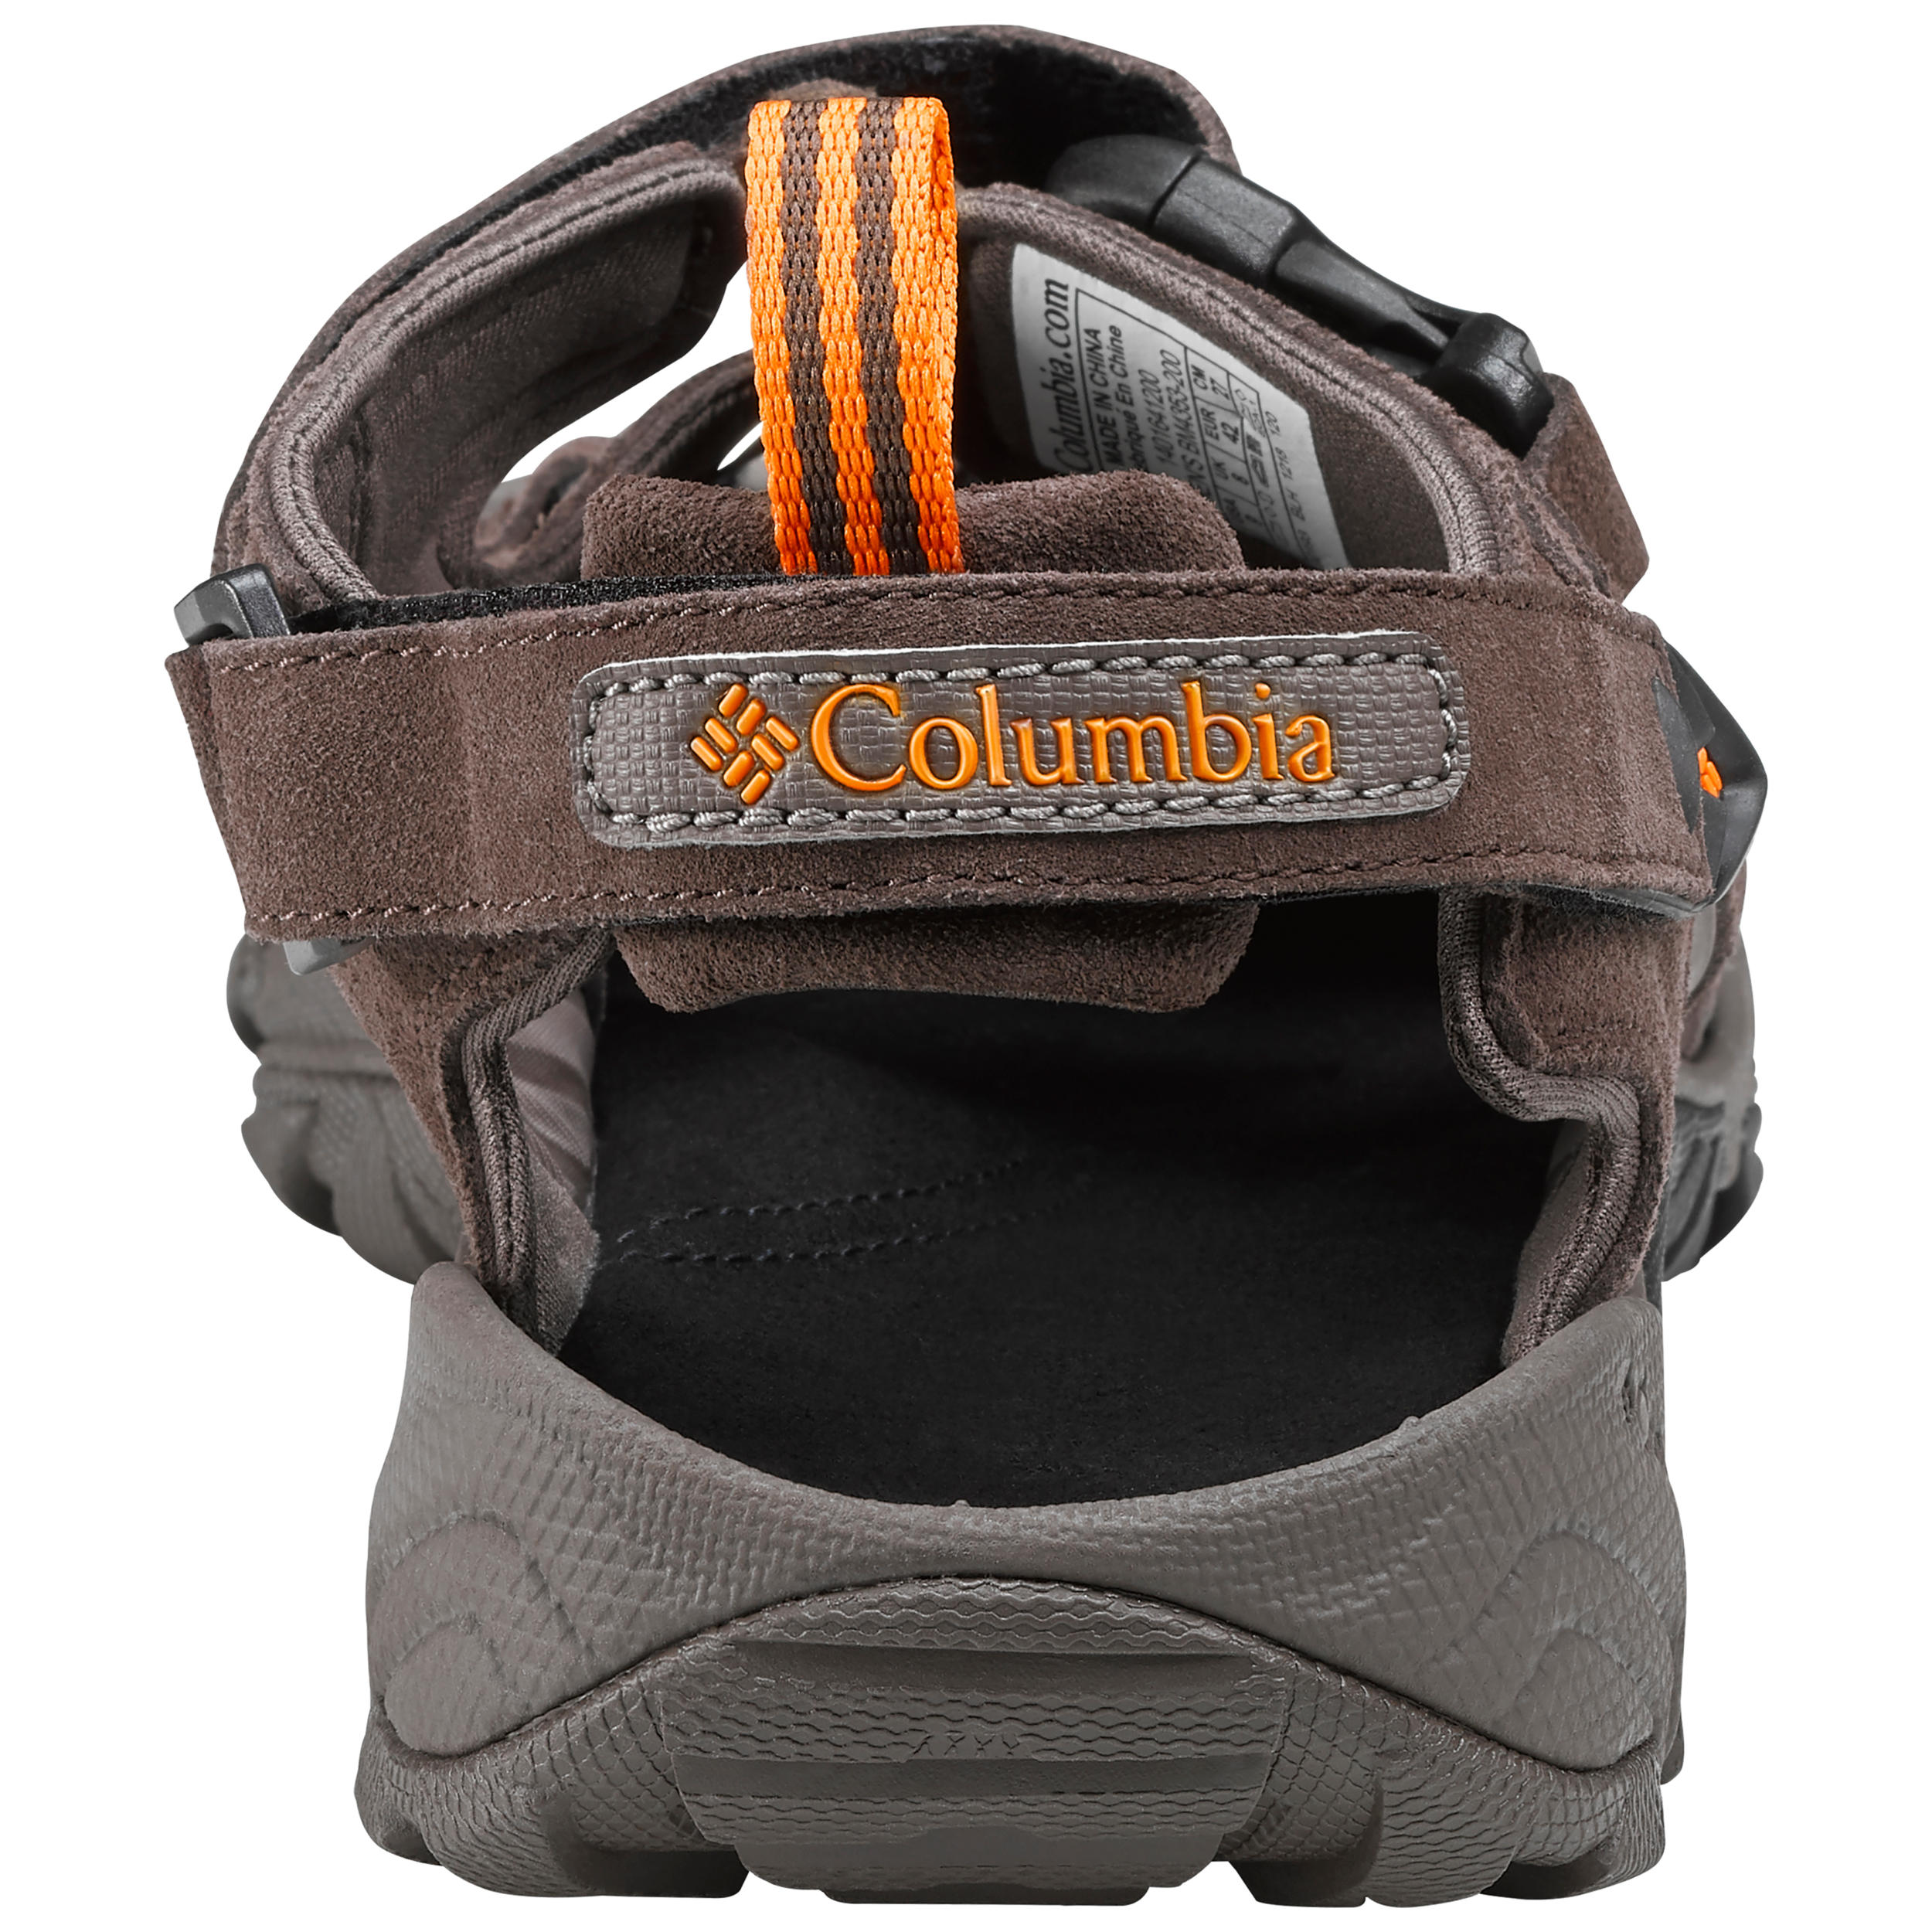 Men's walking sandals - Columbia Ridge Venture - Brown 5/6